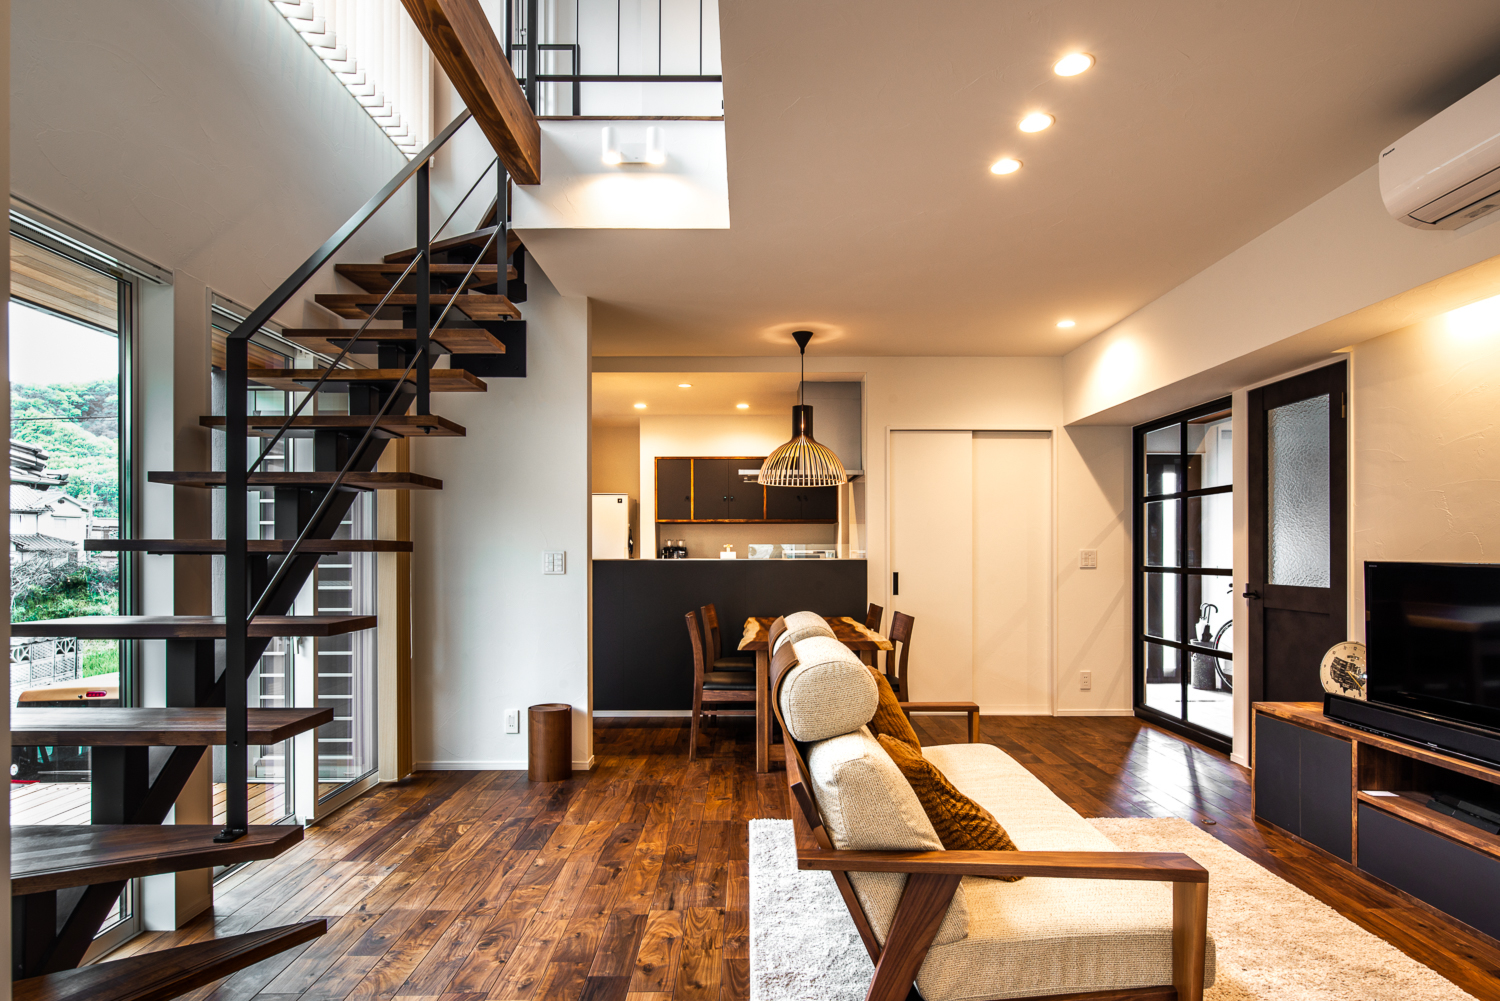 ブラックウォルナットの床は家具・建具・階段の色とも合い、室内を落ち着いた雰囲気にしてくれる。